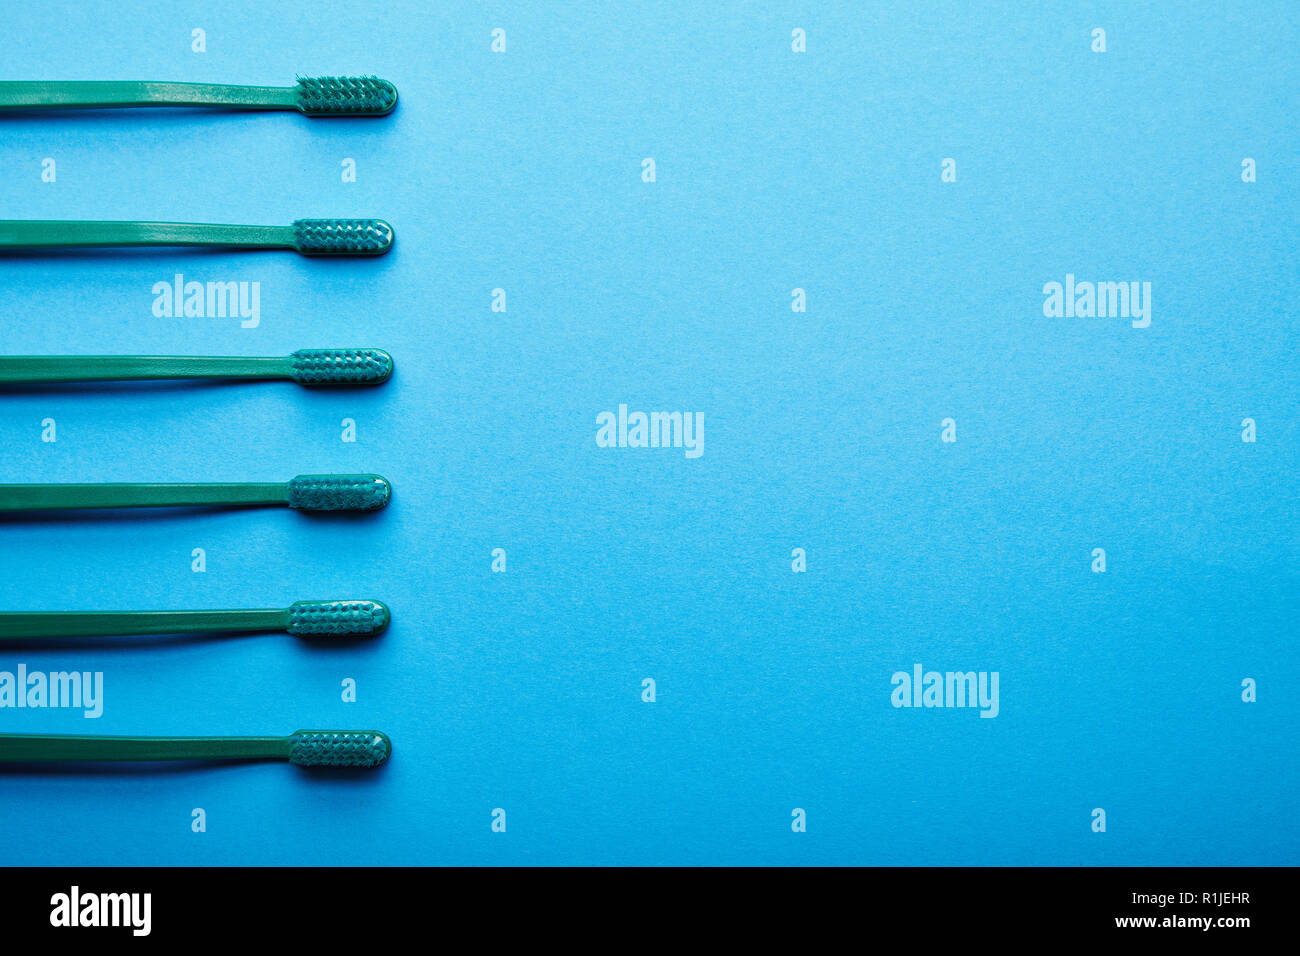 Piatto con laici spazzolini da denti disposti su sfondo blu Foto Stock